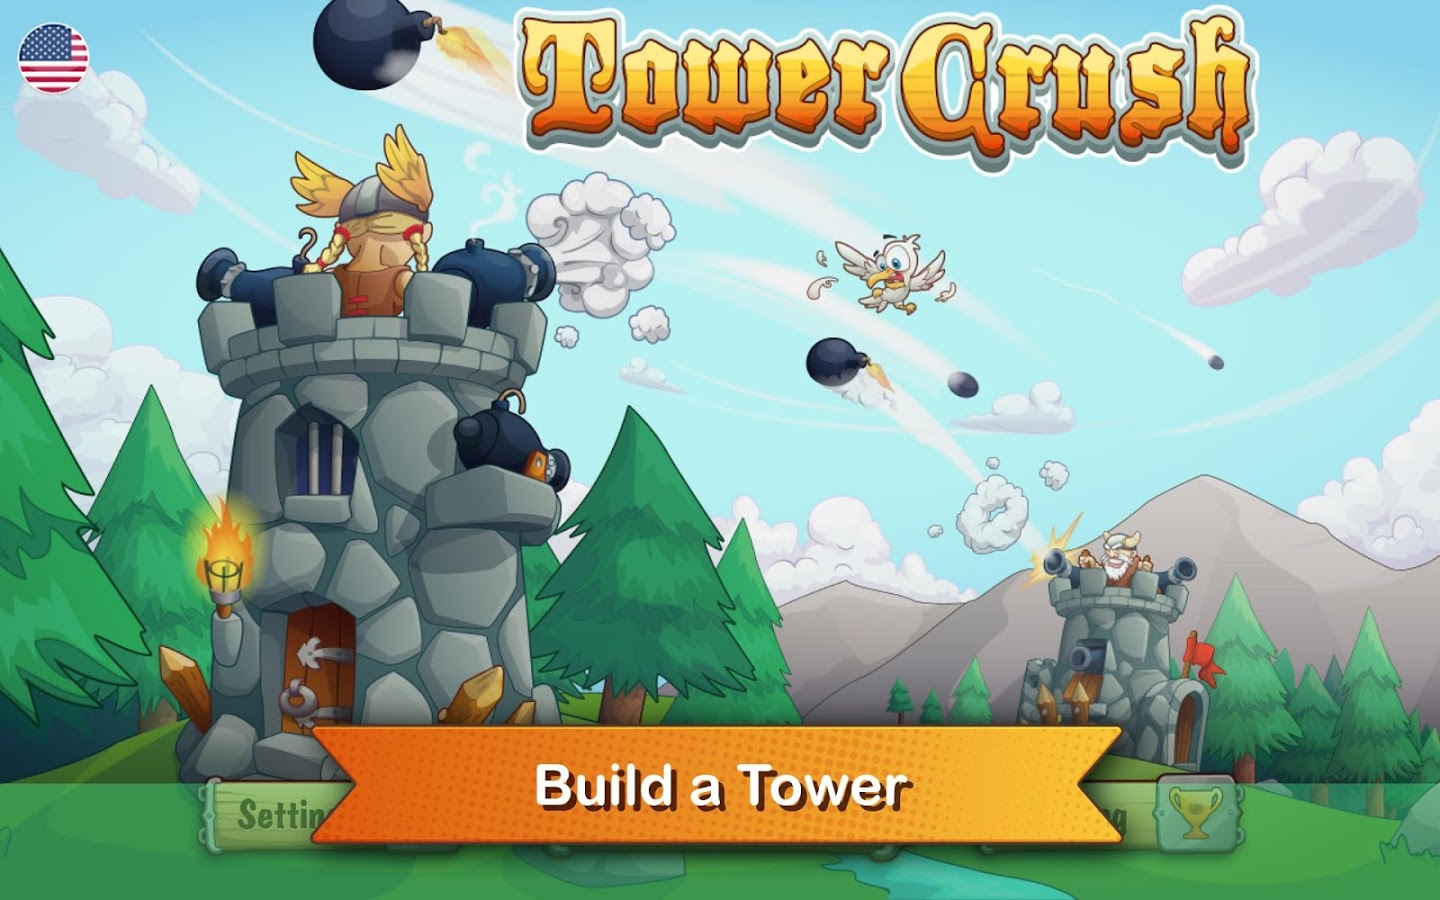 Tải game Tower Crush hack full tiền vàng cho Android